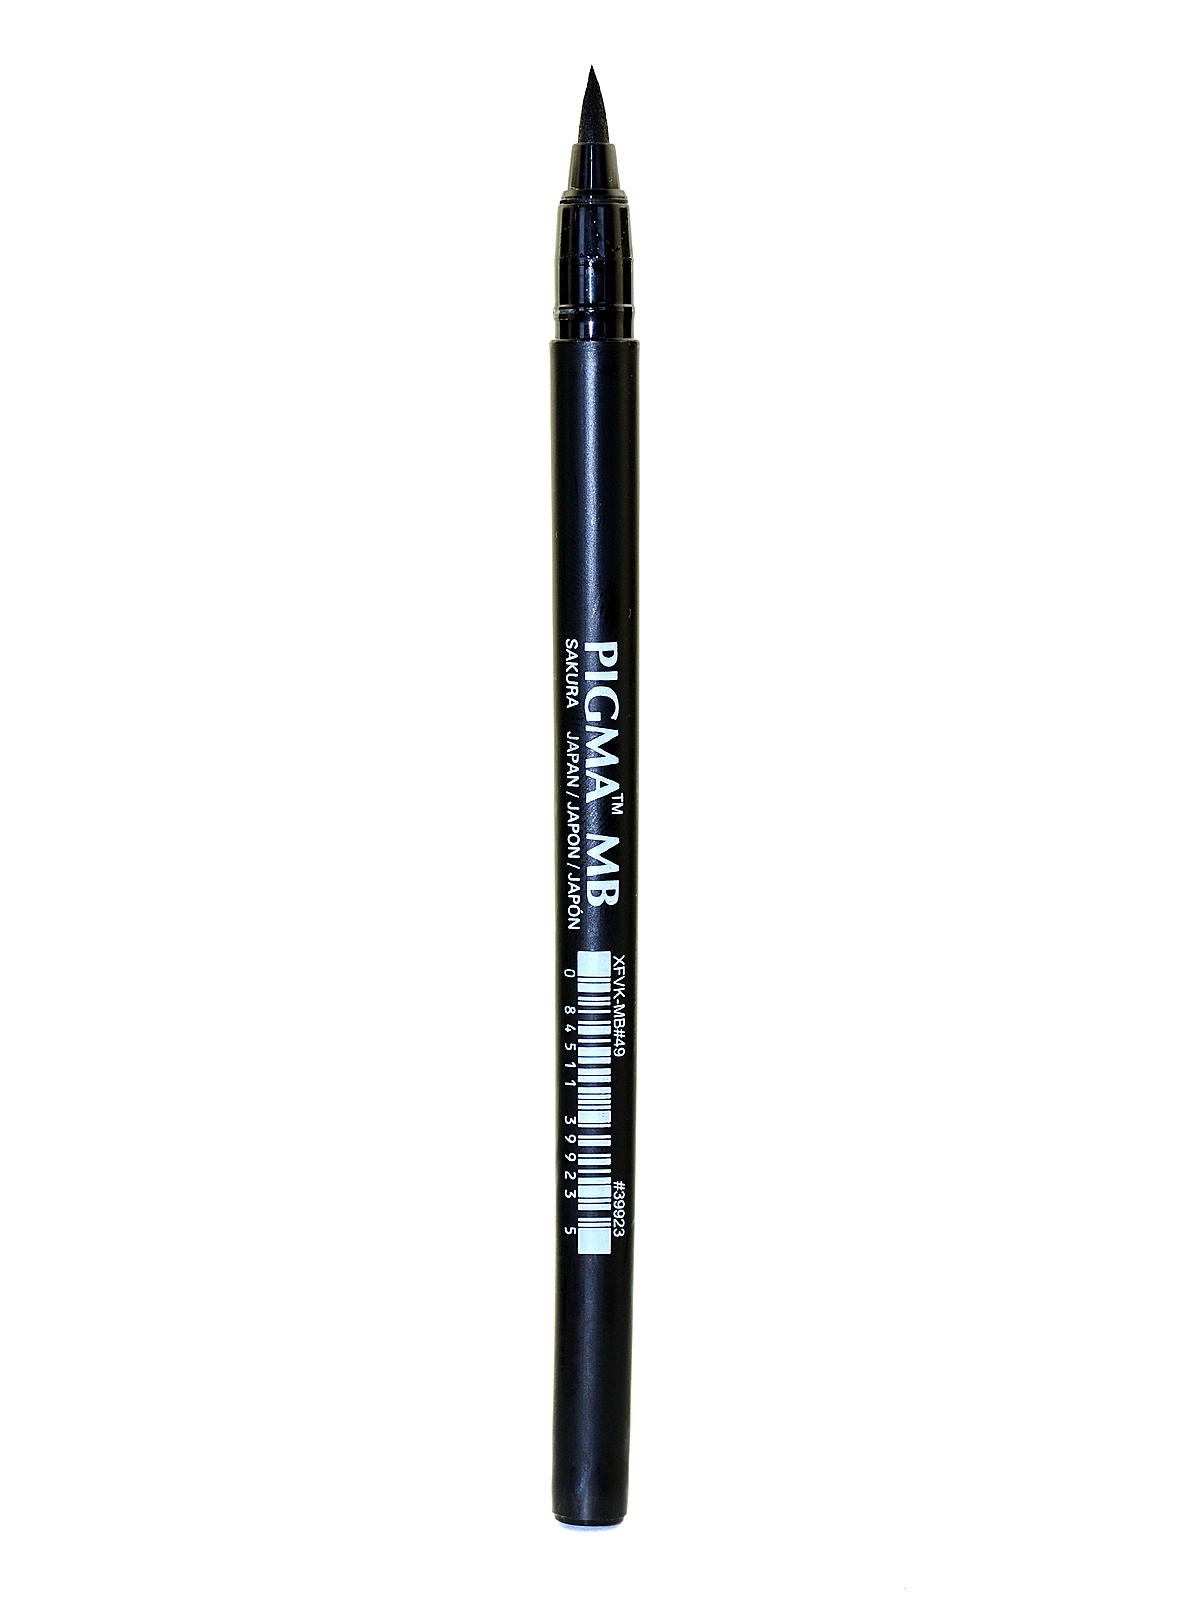 Pigma Professional Brush Pens Mb - Medium Brush Black